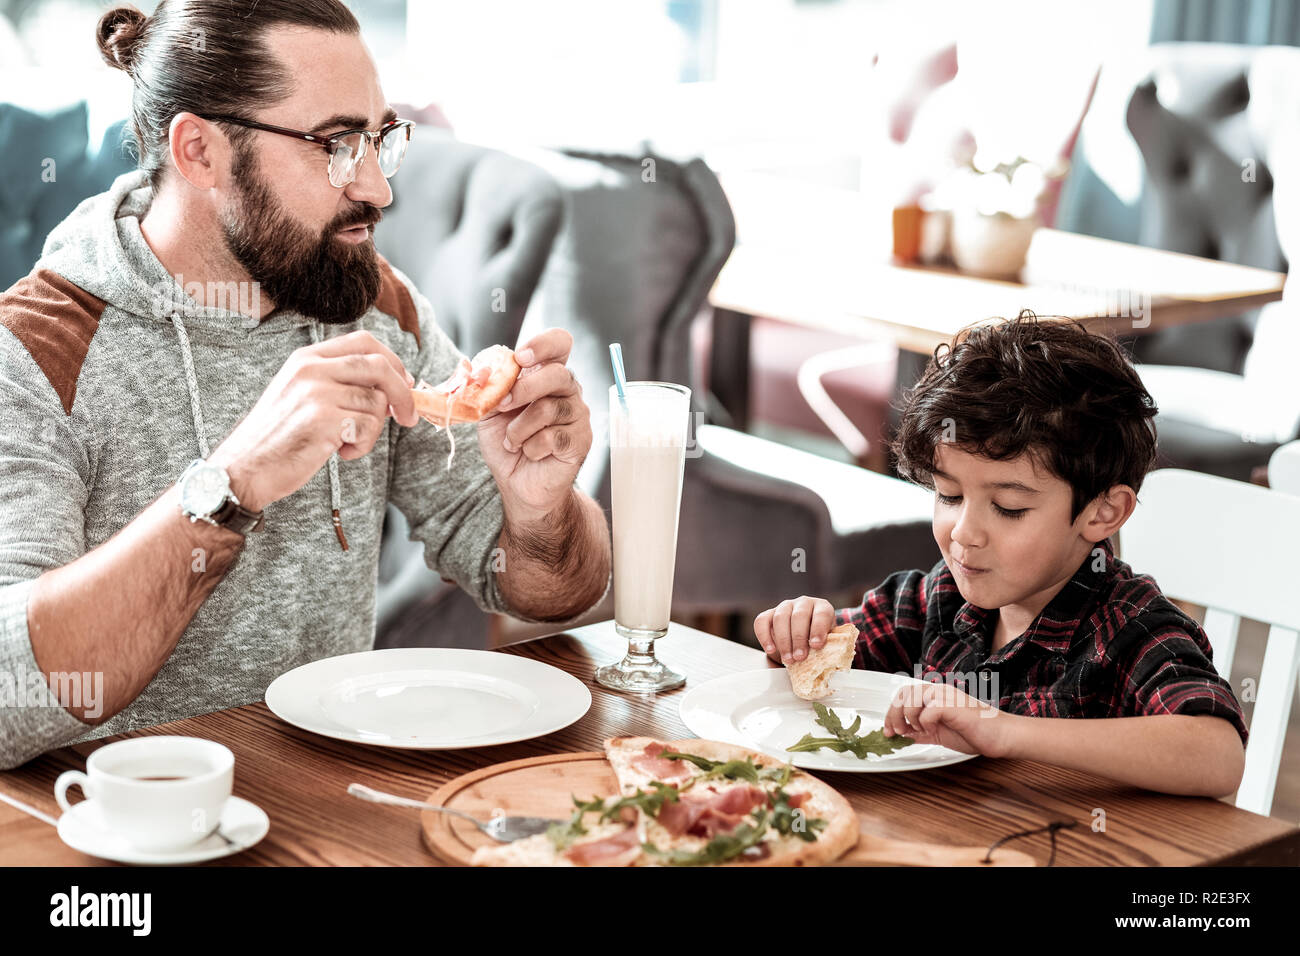 Père barbu et mignon drôle fils s'amusant eating pizza together Banque D'Images